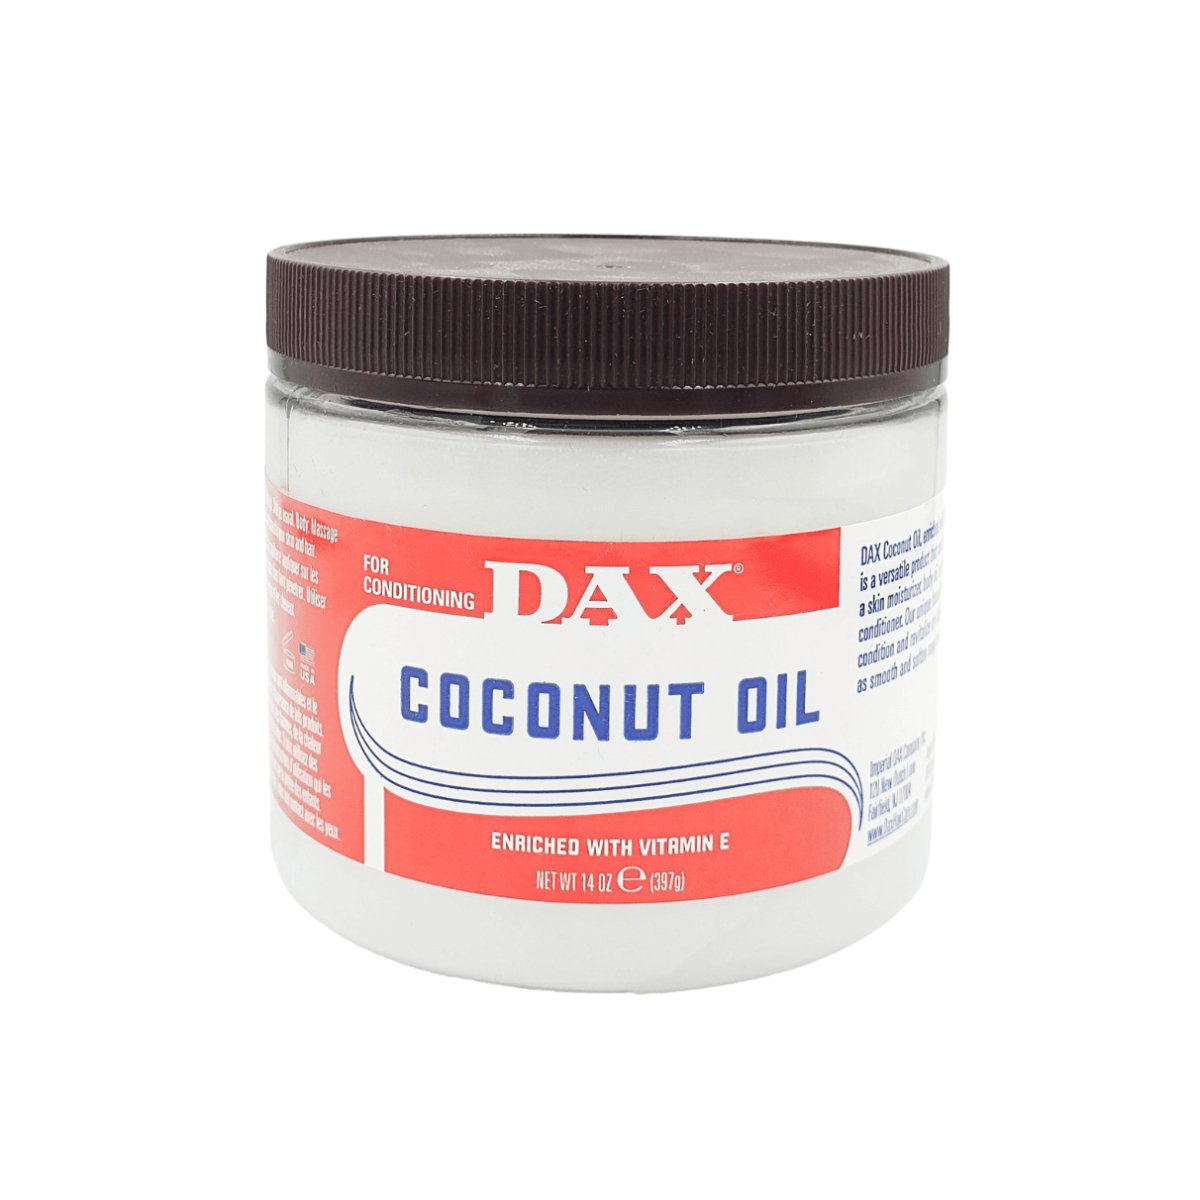 Dax Coconut Oil 397g - CosFair GmbH